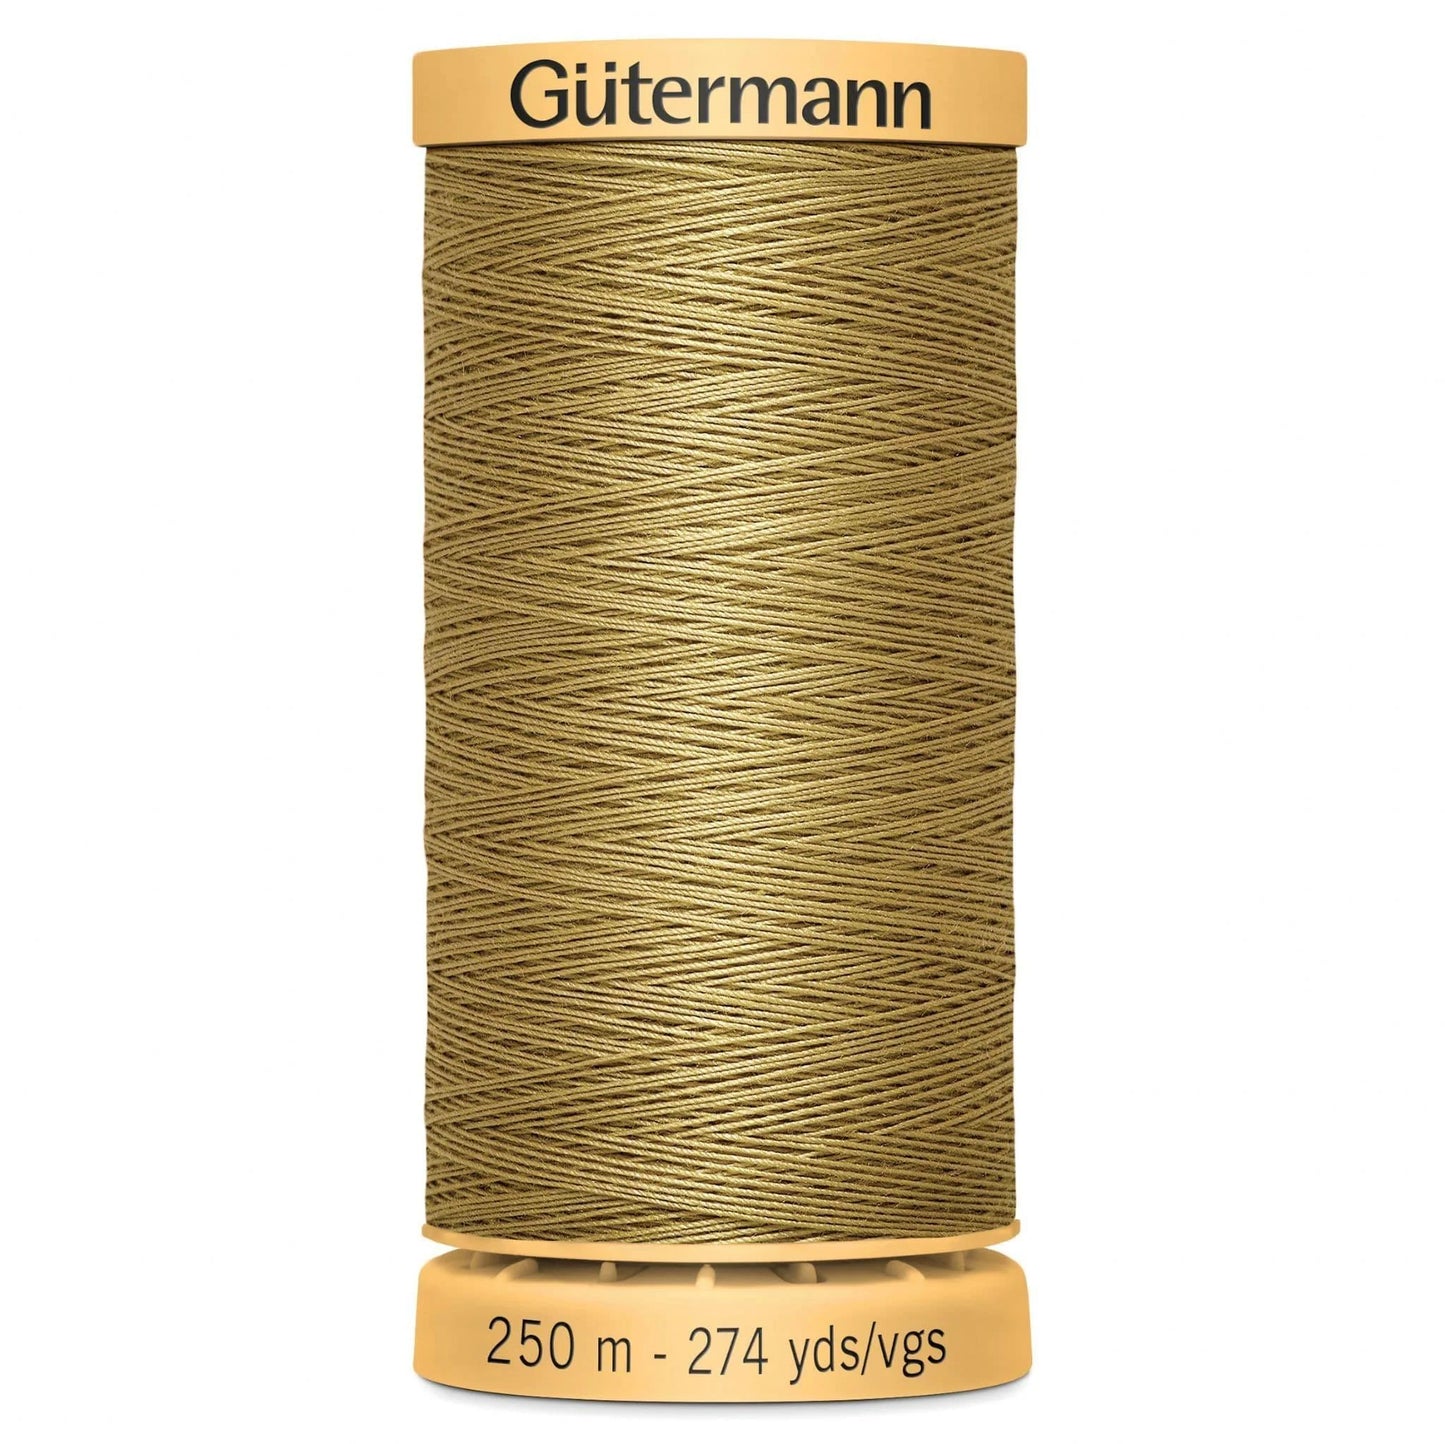 1136 Gutermann Natural Cotton Thread 250m - Dark Beige